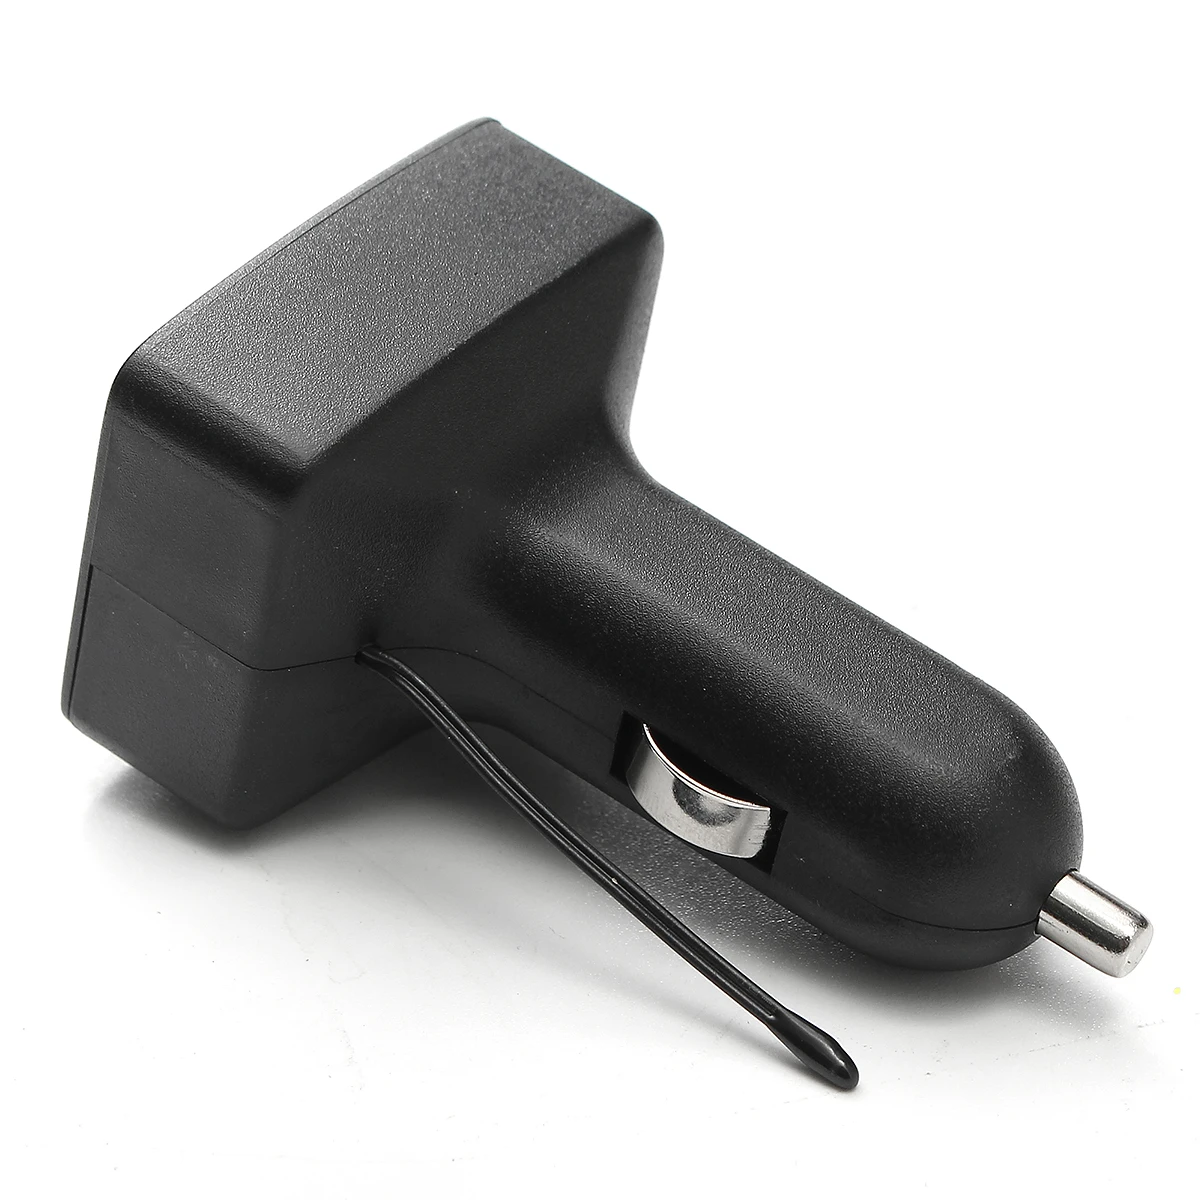 12 В 24 В Универсальный двойной USB интерфейс Автомобильное зарядное устройство многофункциональный, с ЖК-дисплеем Вольтметр Амперметр термометр инструмент